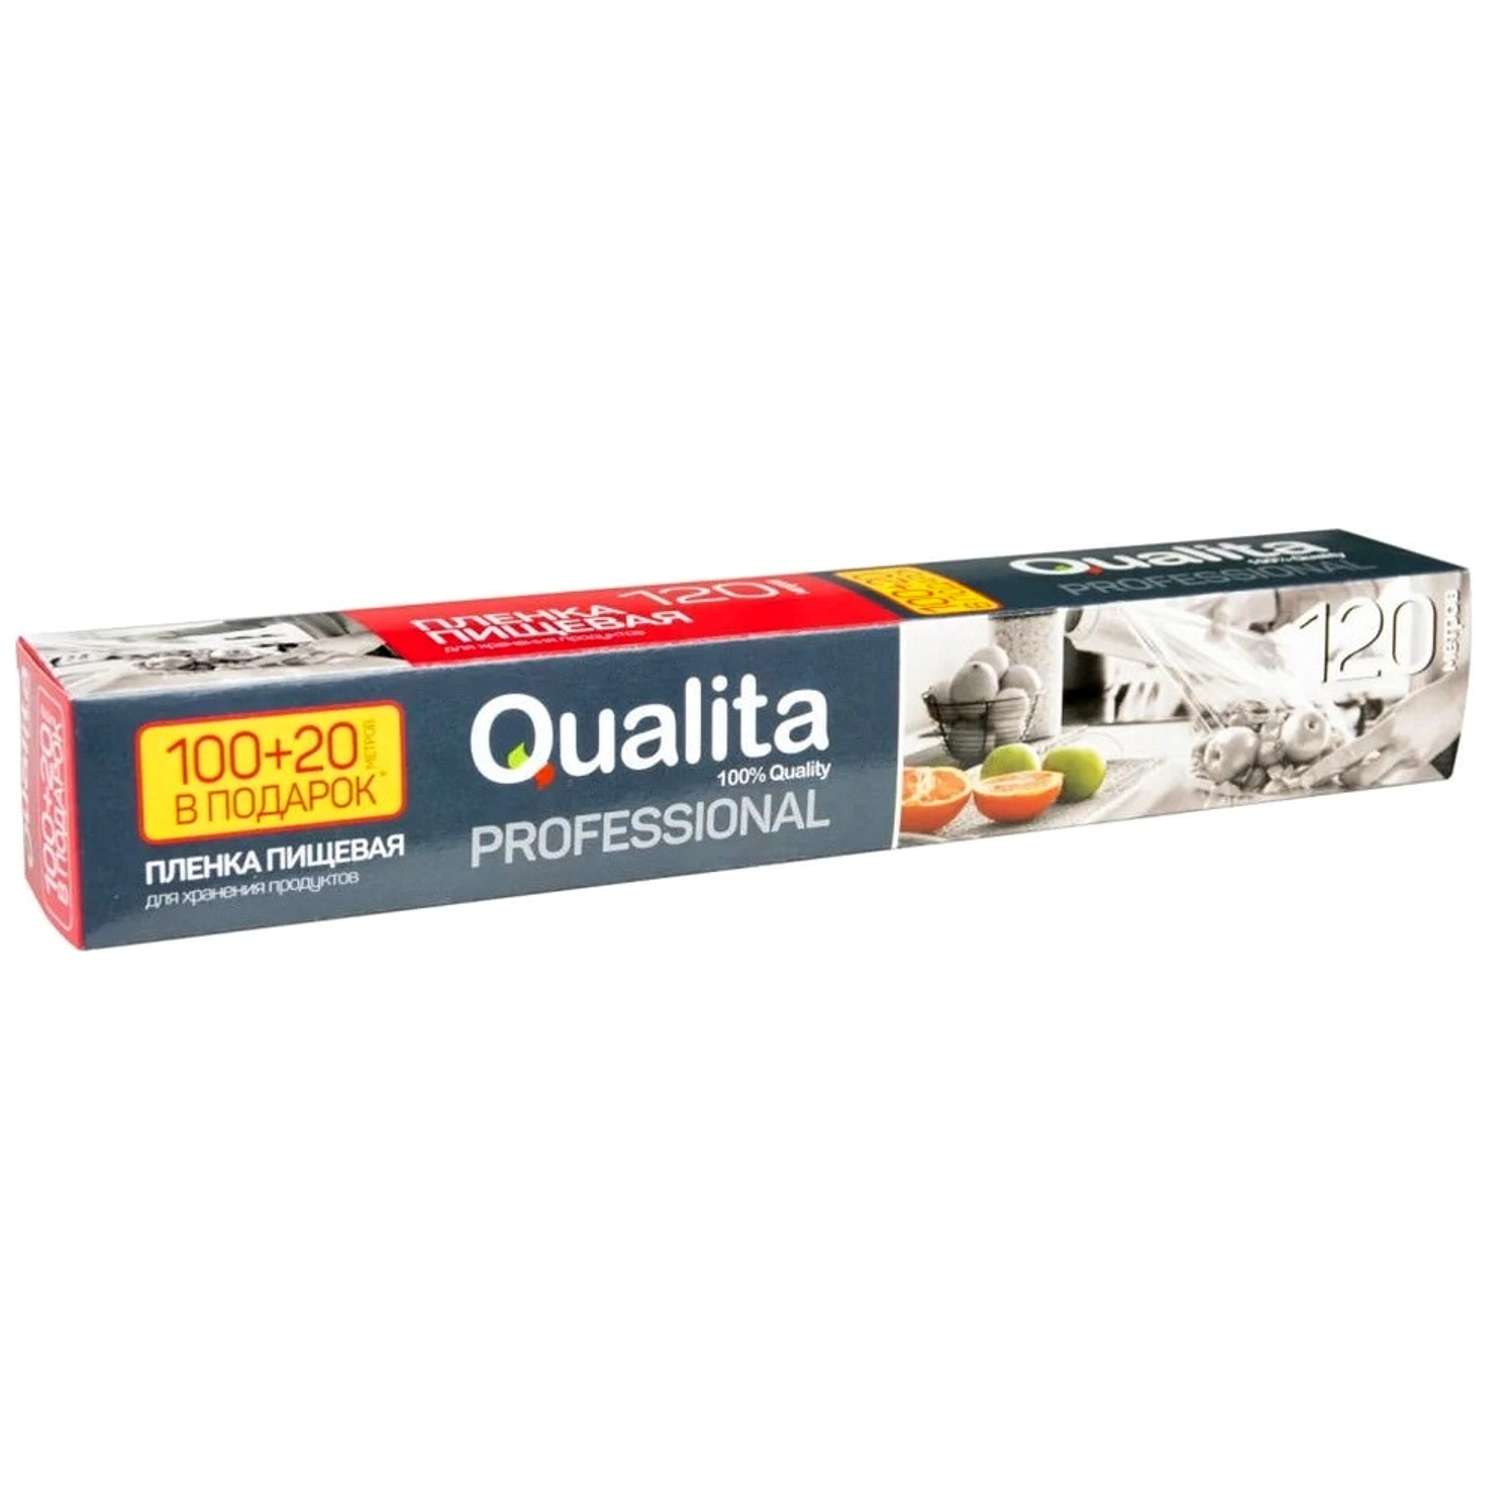 Пленка пищевая QUALITA в коробке 100+20м - фото 1